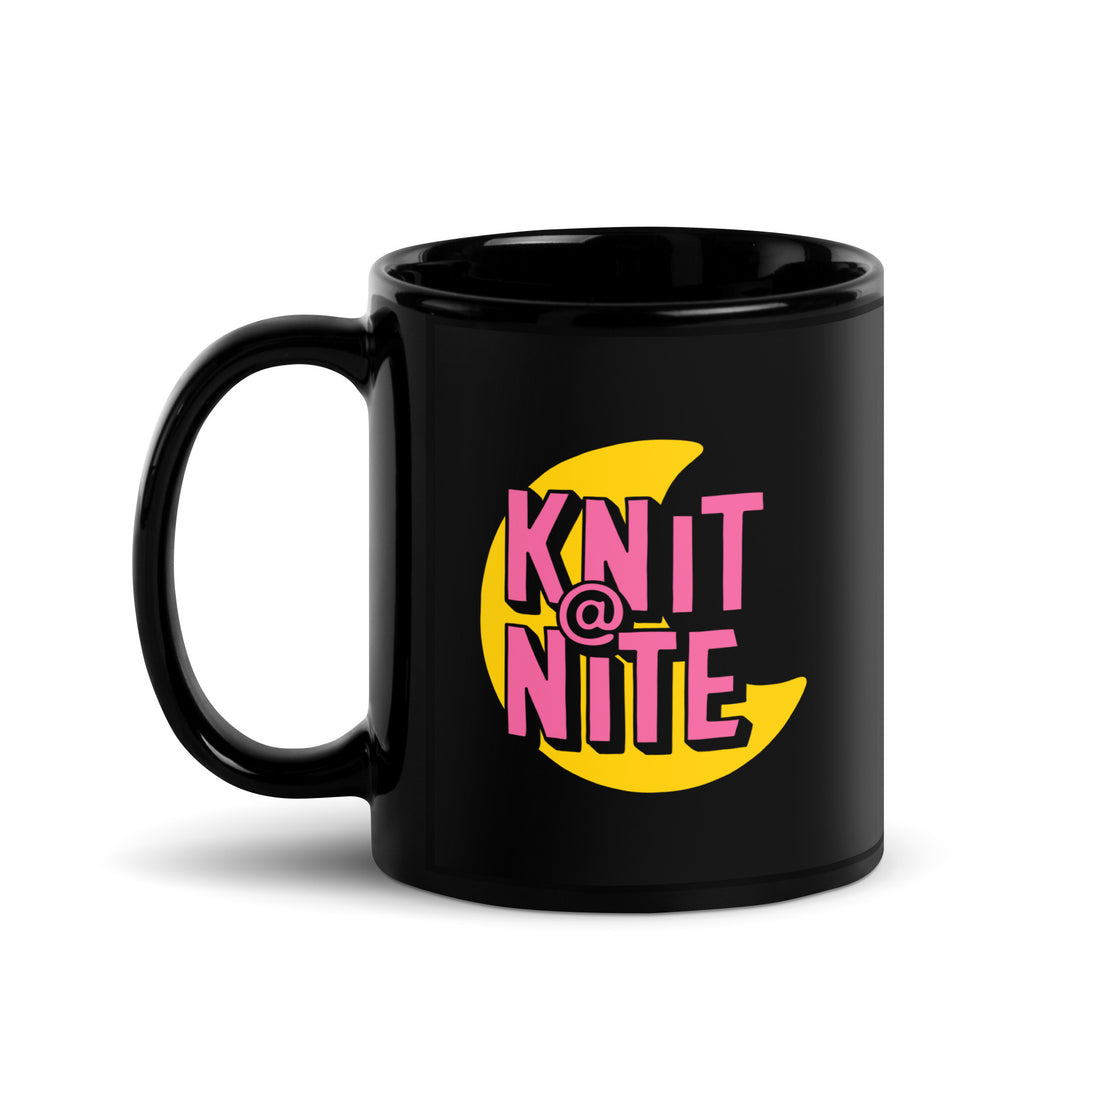 Knit @ Nite Mug